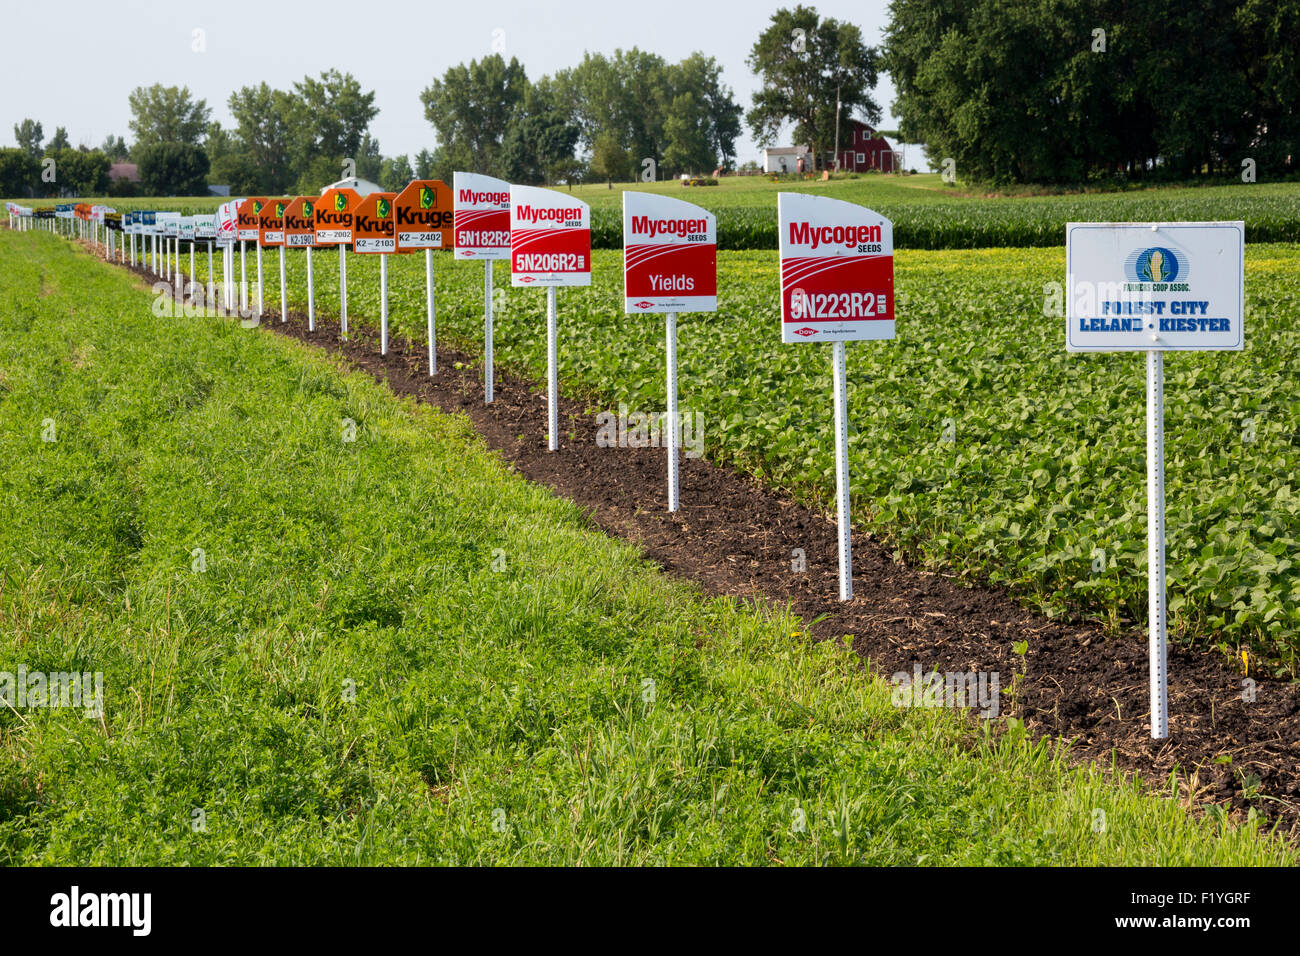 Forest City, Iowa - Zeichen markieren verschiedene Ernte Sorten in einem Soja-Feld, einschließlich gentechnisch veränderte Nutzpflanzen. Stockfoto